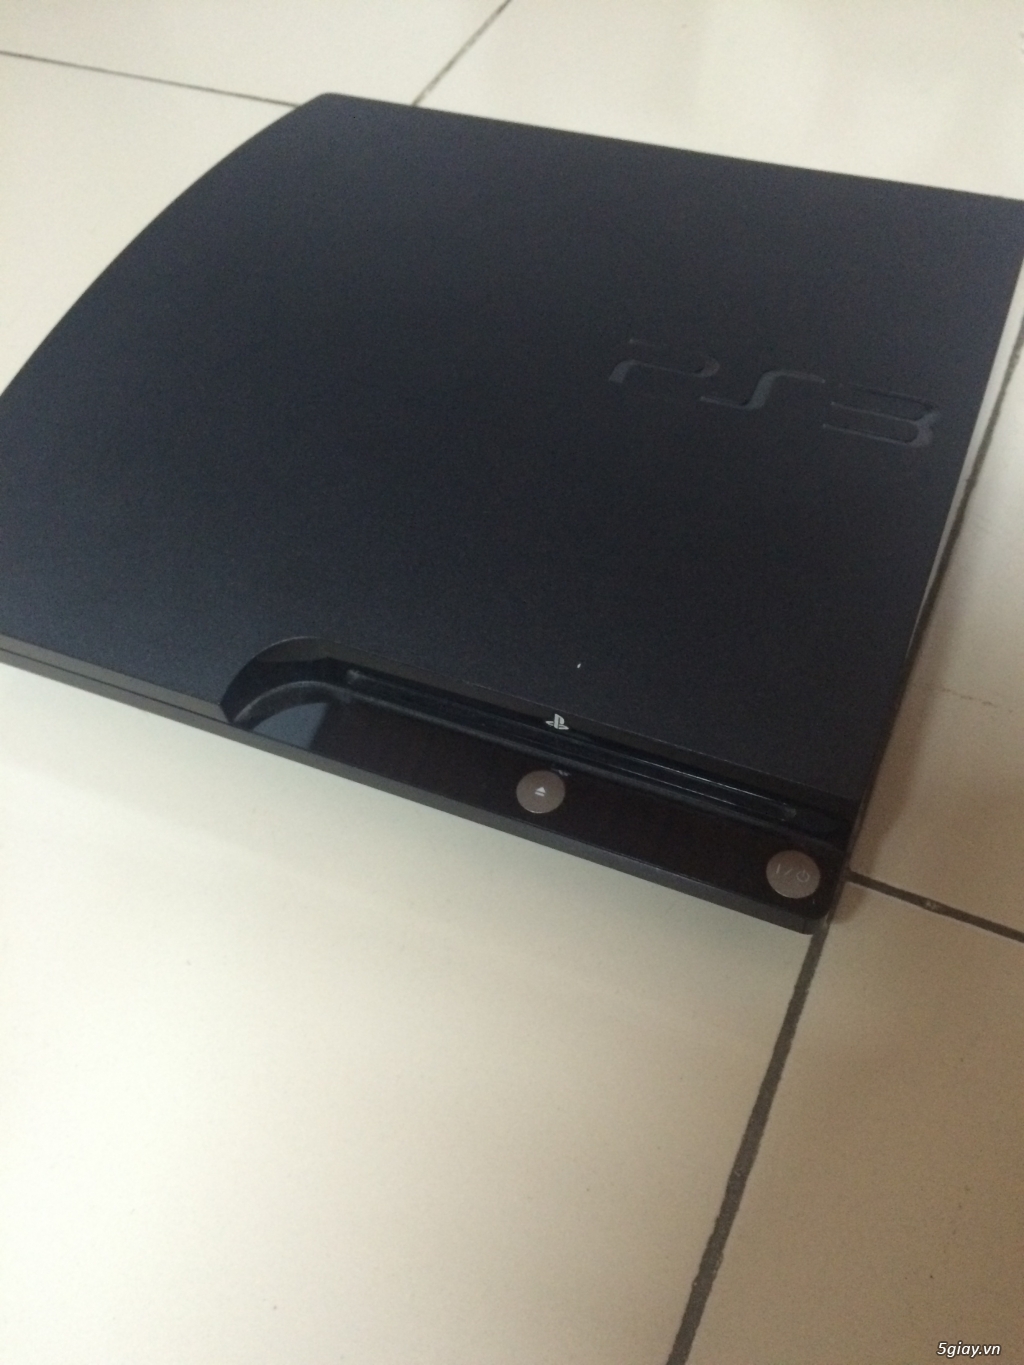 PS3 Slim zin chưa hack tặng ngay 2 đĩa game HOT